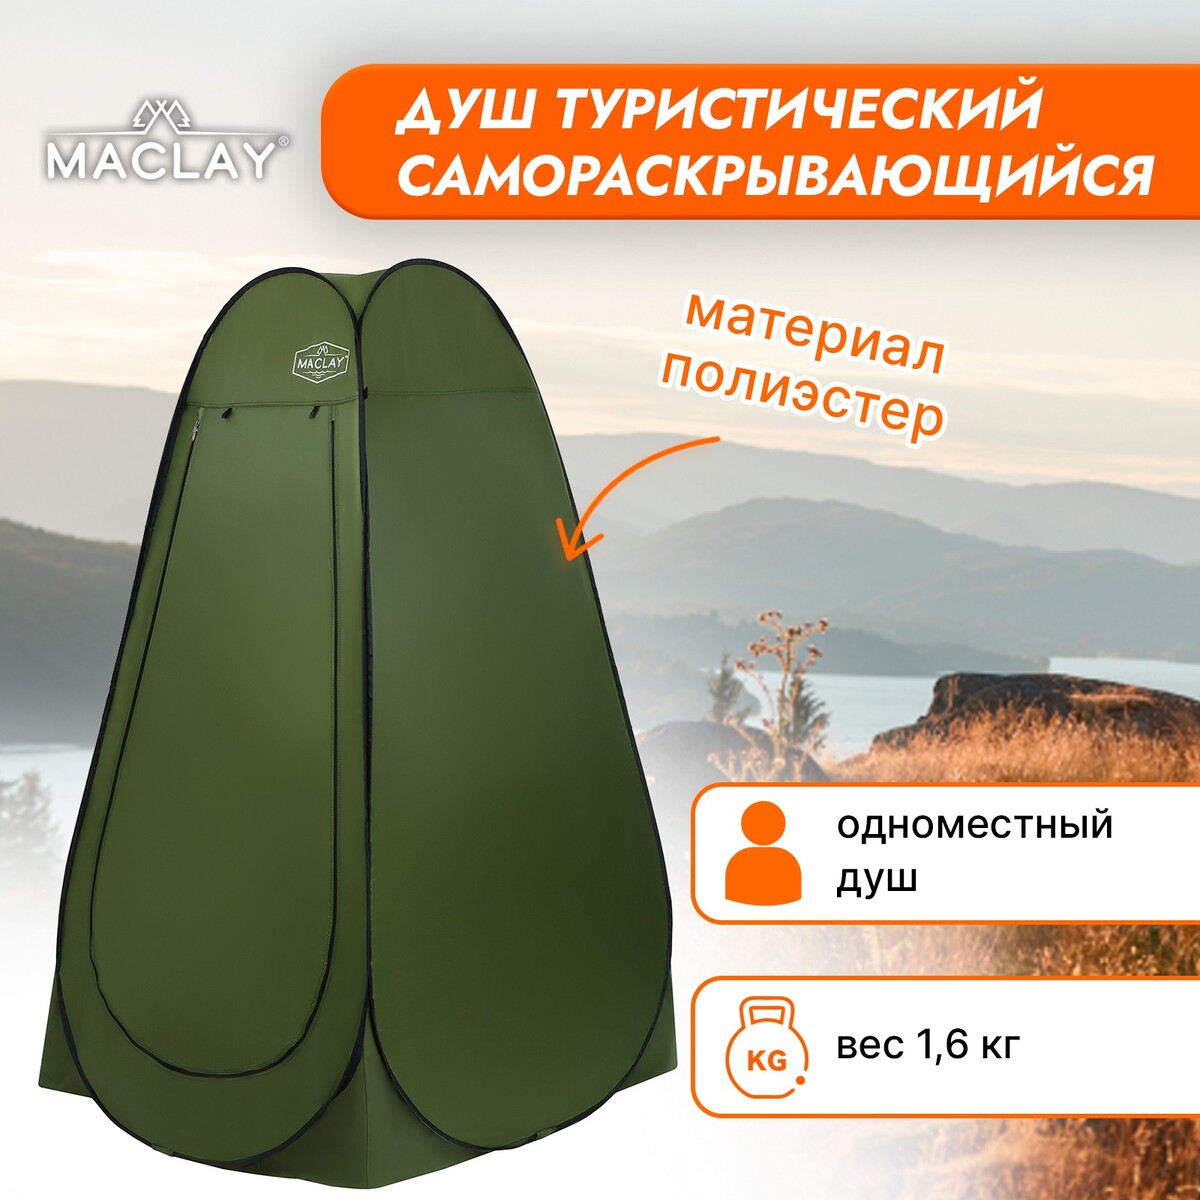 Палатка туристическая maclay, самораскрывающаяся, для душа, 120х120х195 см, цвет зеленый ложка складная maclay туристическая 11х3 4 см